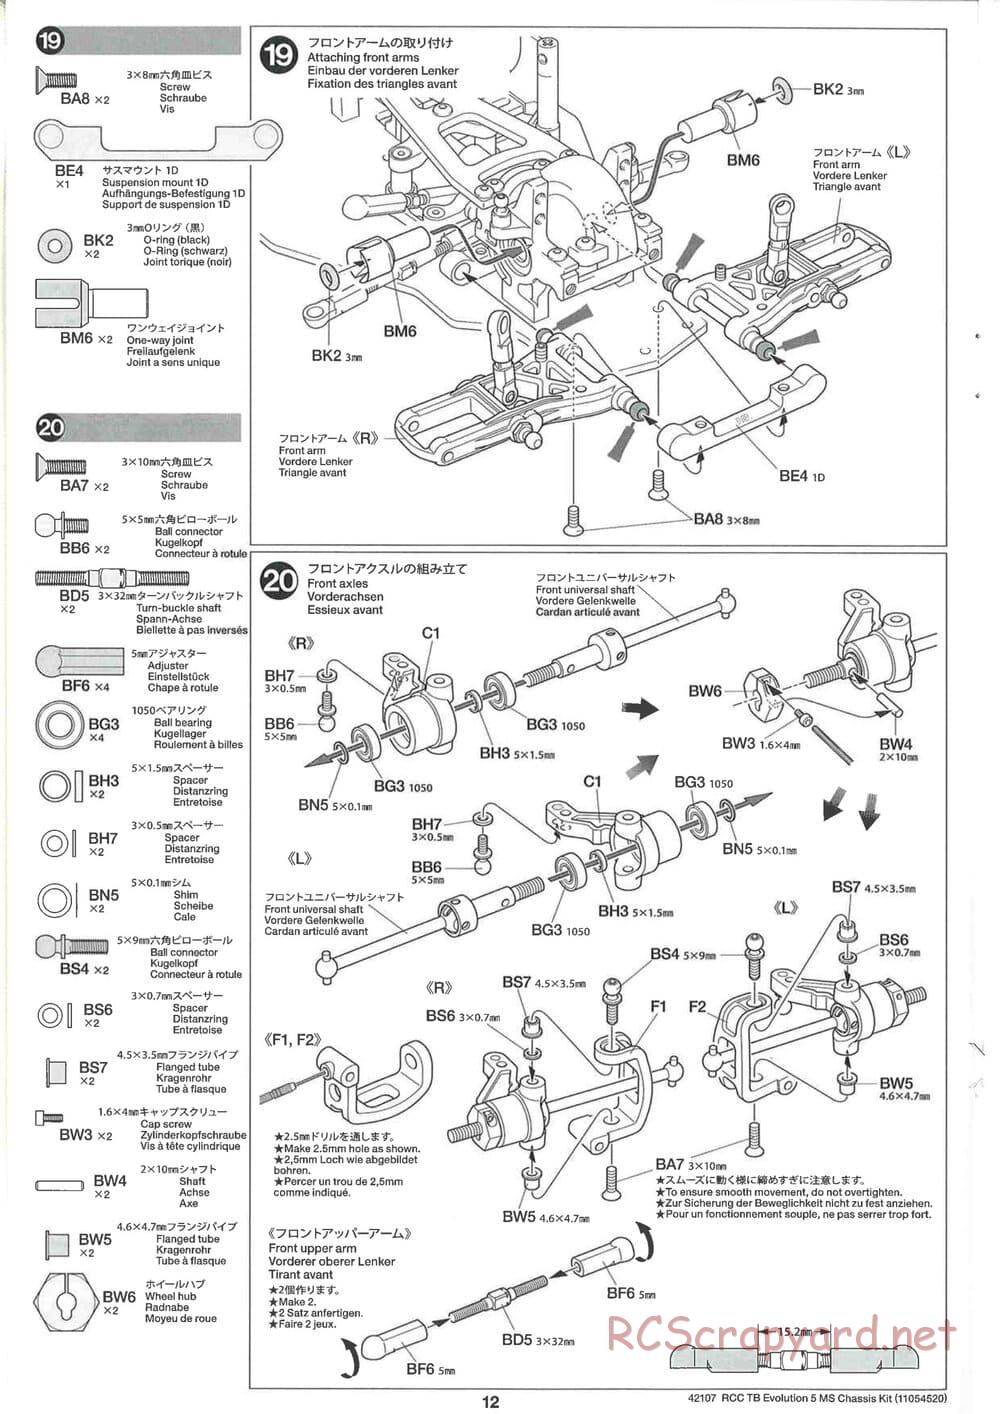 Tamiya - TB Evolution 5 MS Chassis - Manual - Page 12